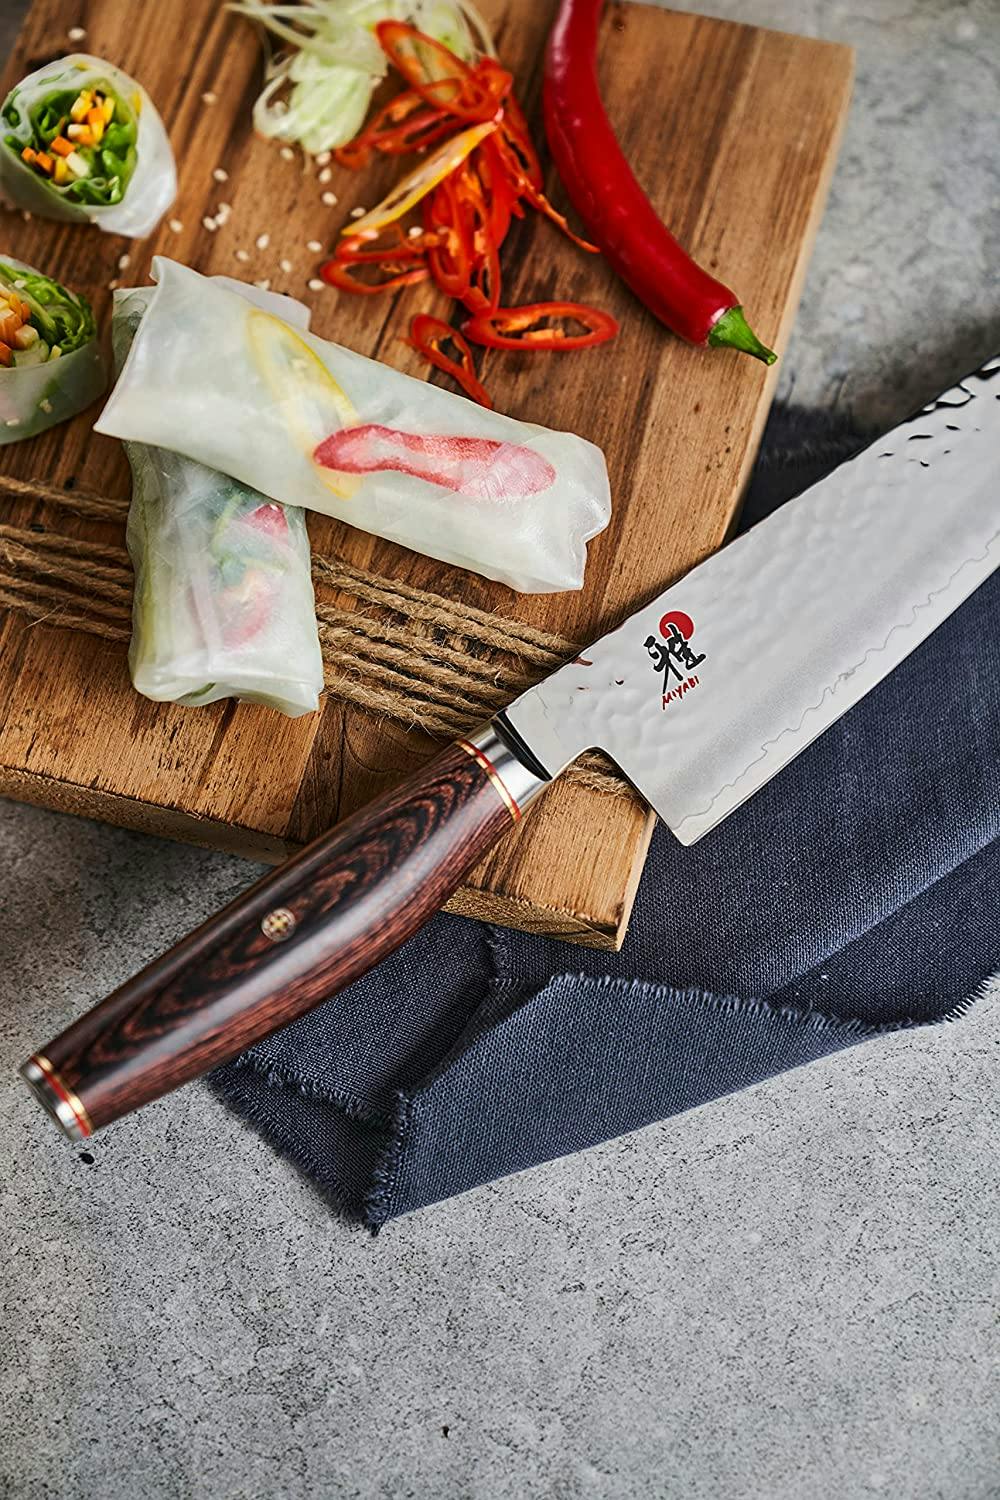 Miyabi Artisan 5" Pakka Wood Utility Knife